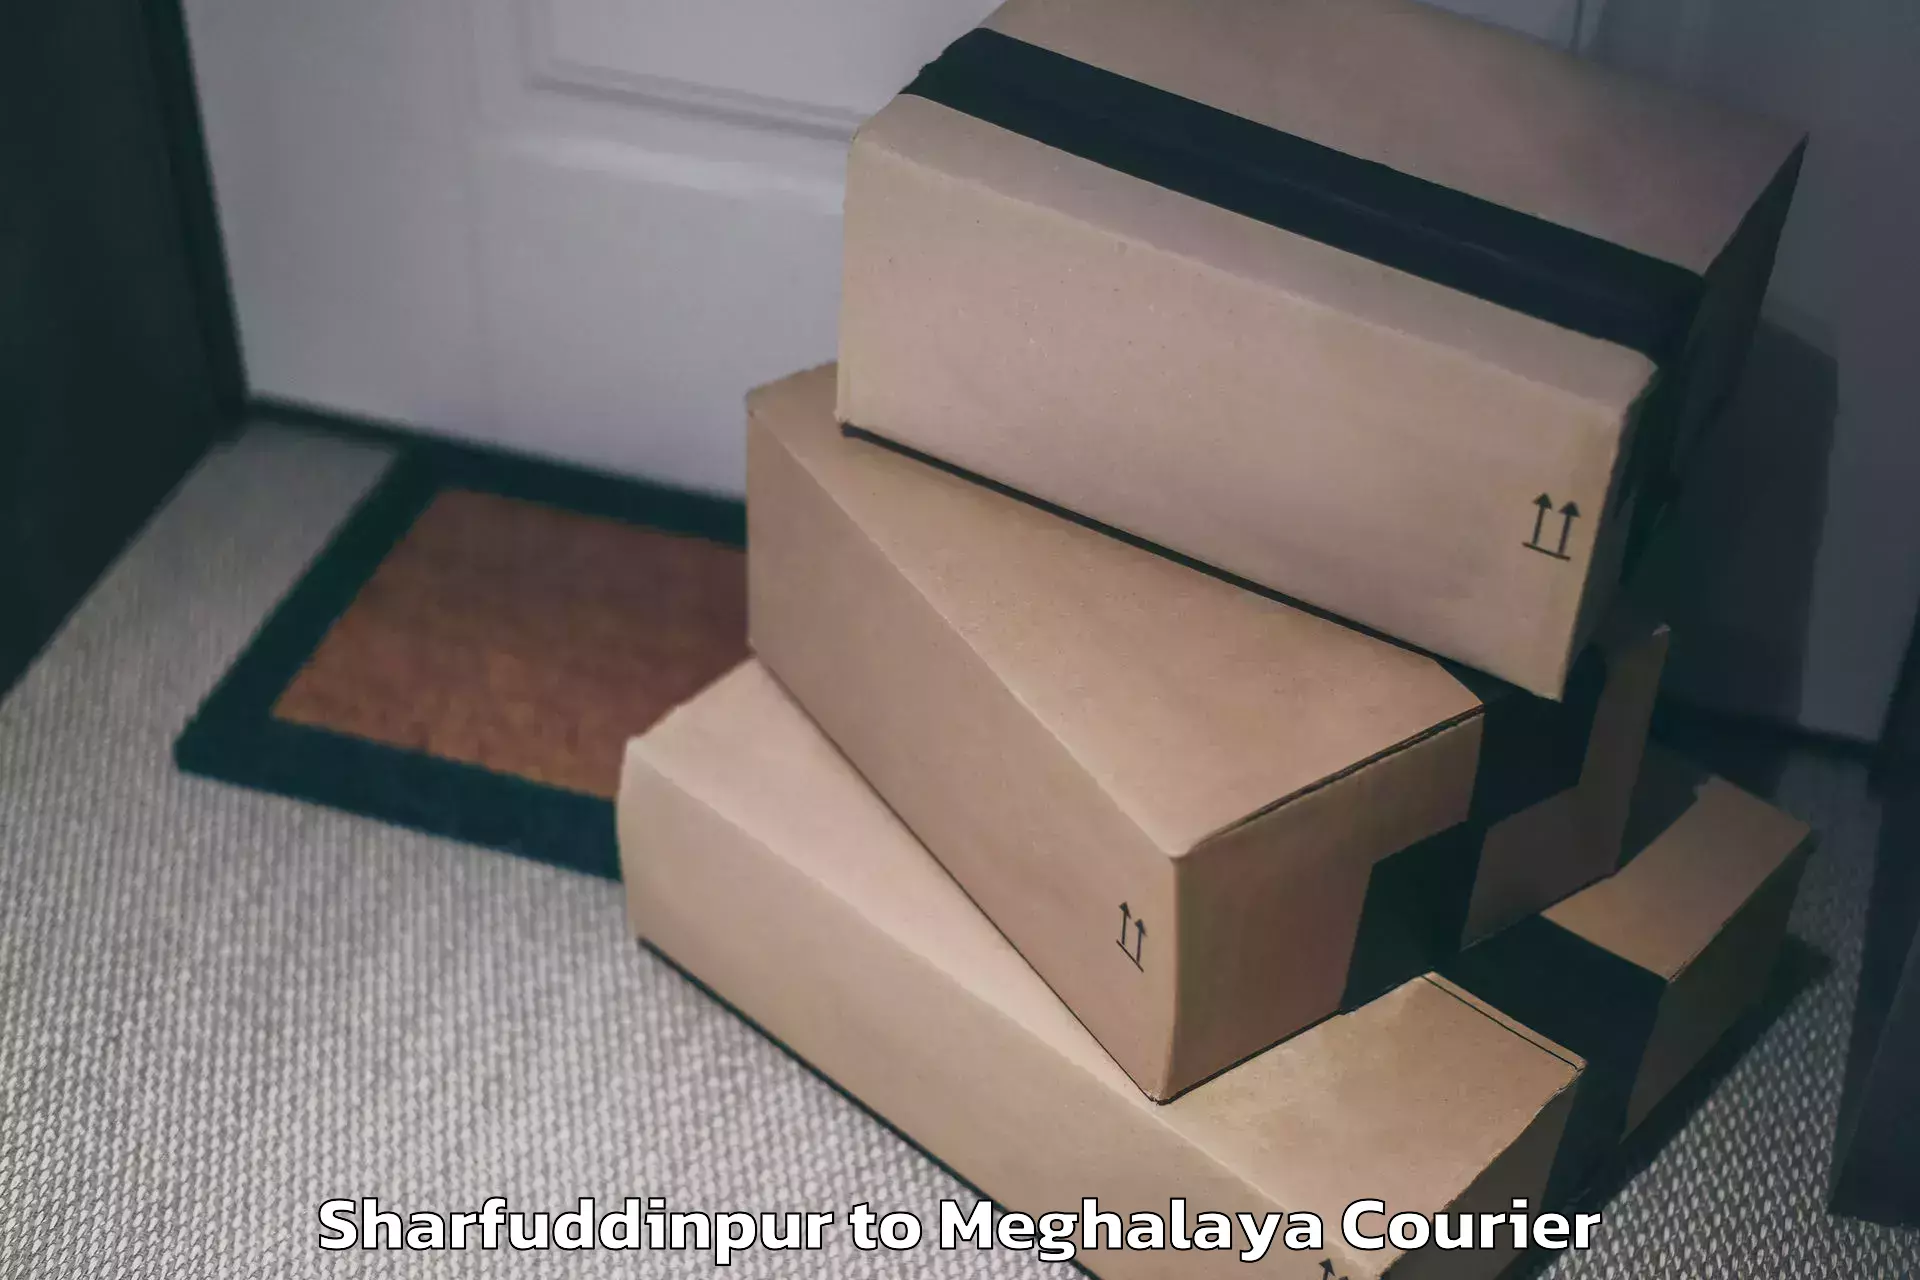 Baggage shipping experts Sharfuddinpur to Shillong